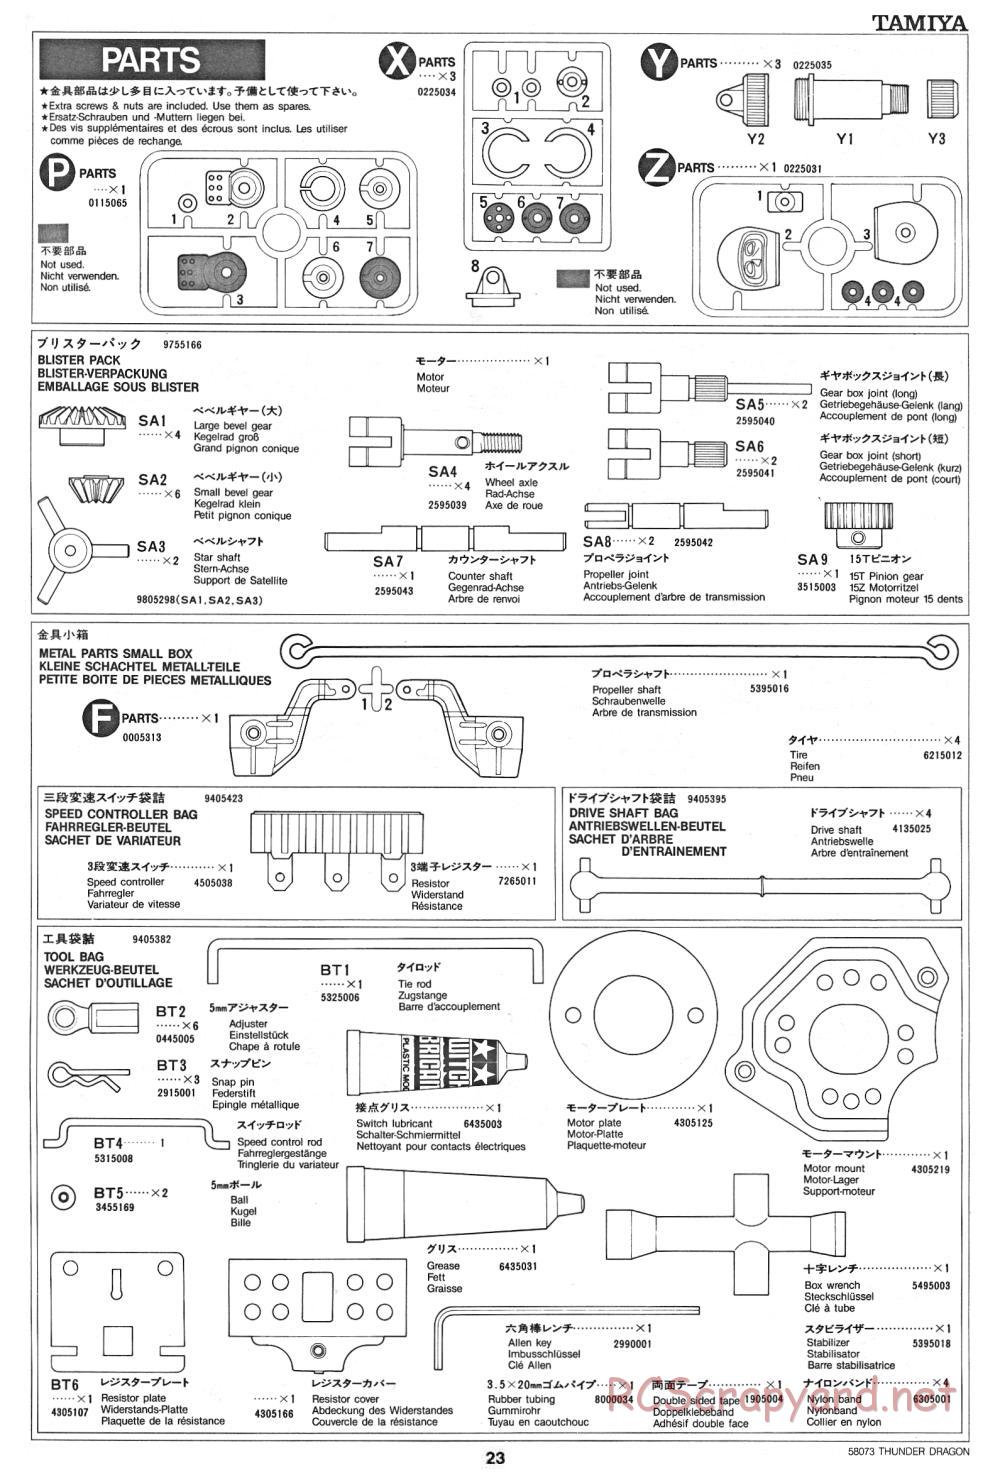 Tamiya - Thunder Dragon - 58073 - Manual - Page 23